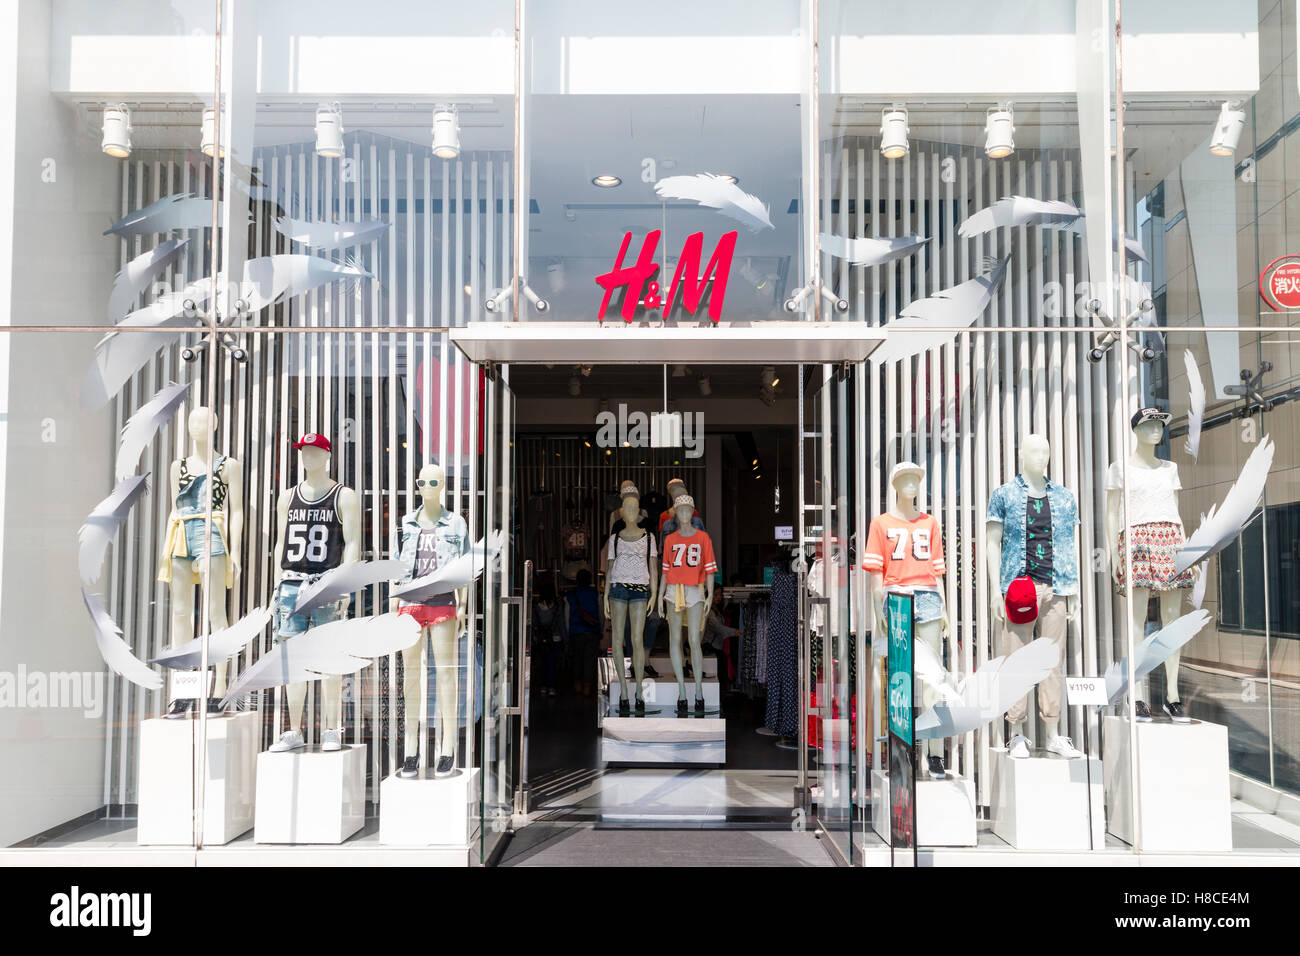 Japón, Tokio, Harajuku. H&M moda tienda de ropa de la cadena de entrada y  la fachada de una tienda, con tema de plumas blancas en la ventana. En  horario diurno Fotografía de